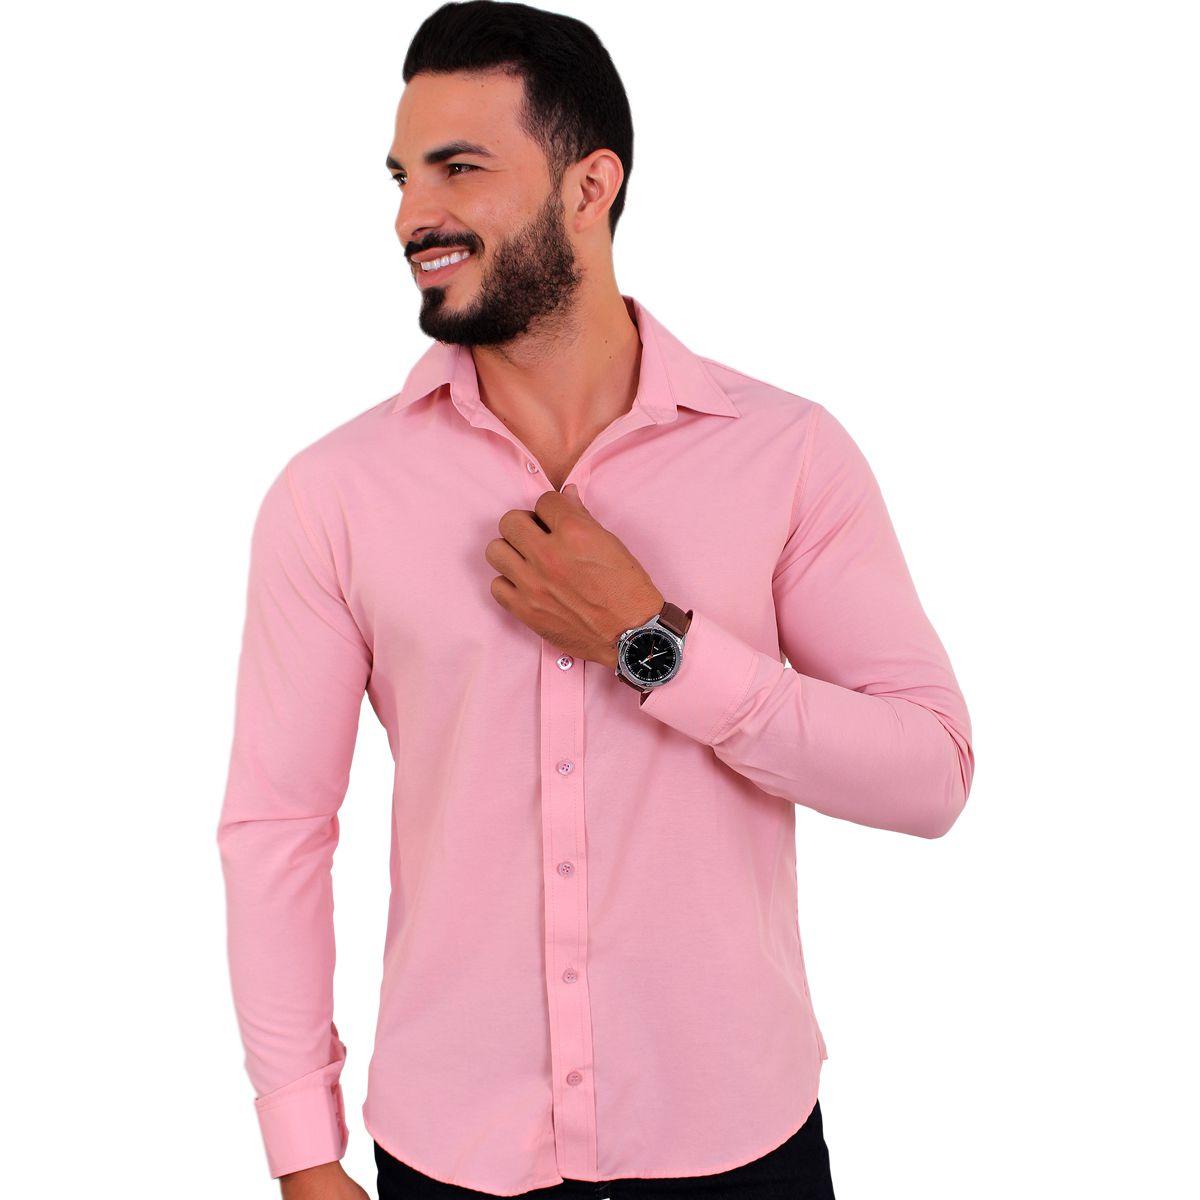 camisa social rosa bebe masculina